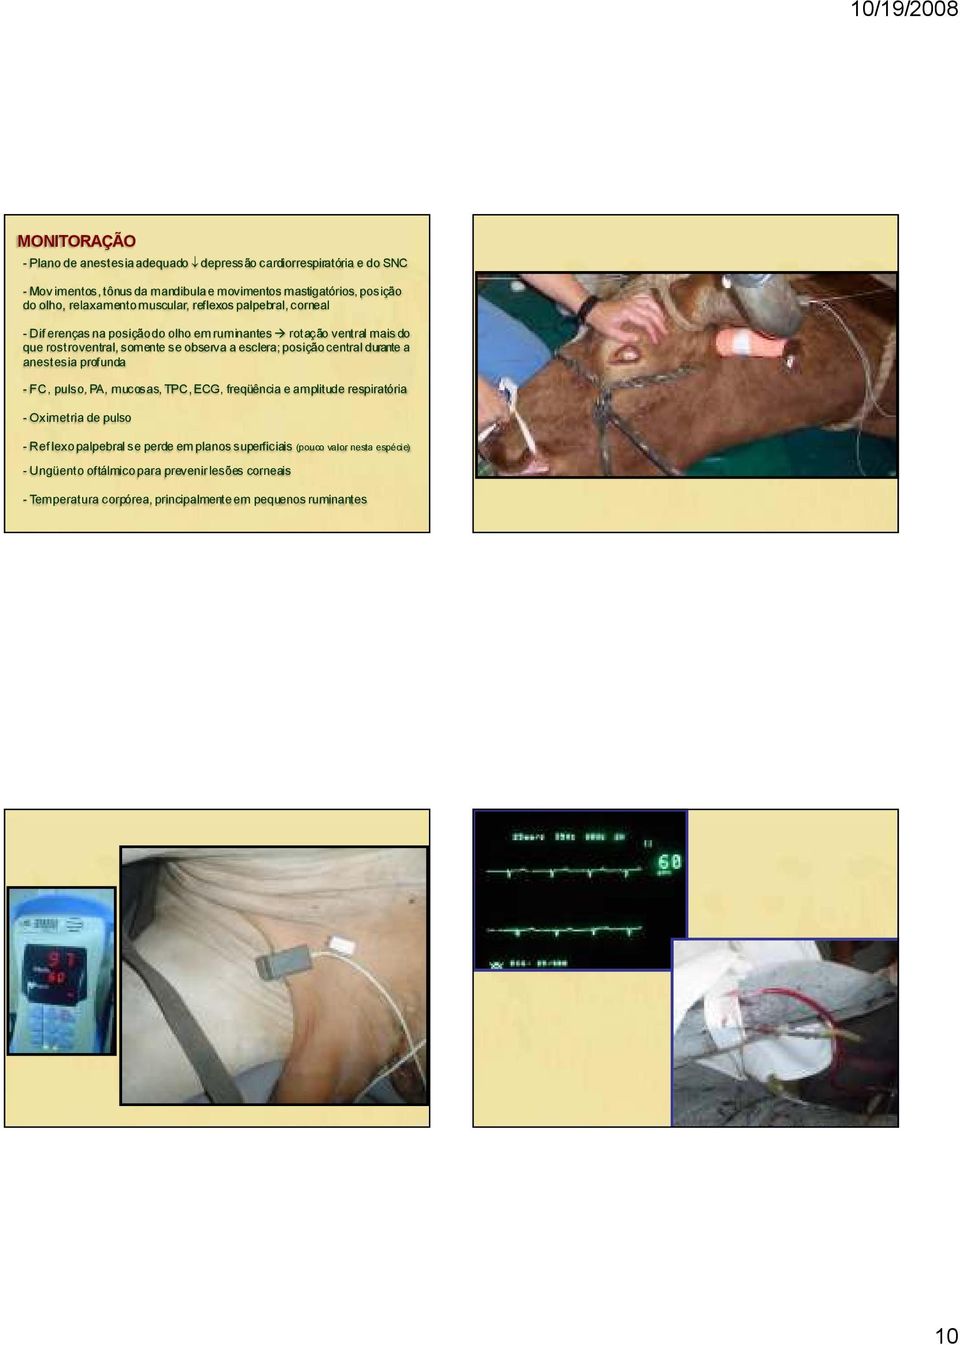 esclera; posiçãocentral durante a anestesia profunda - FC, pulso, PA, mucosas, TPC, ECG, freqüência e amplitude respiratória - Oximetria de pulso - Ref